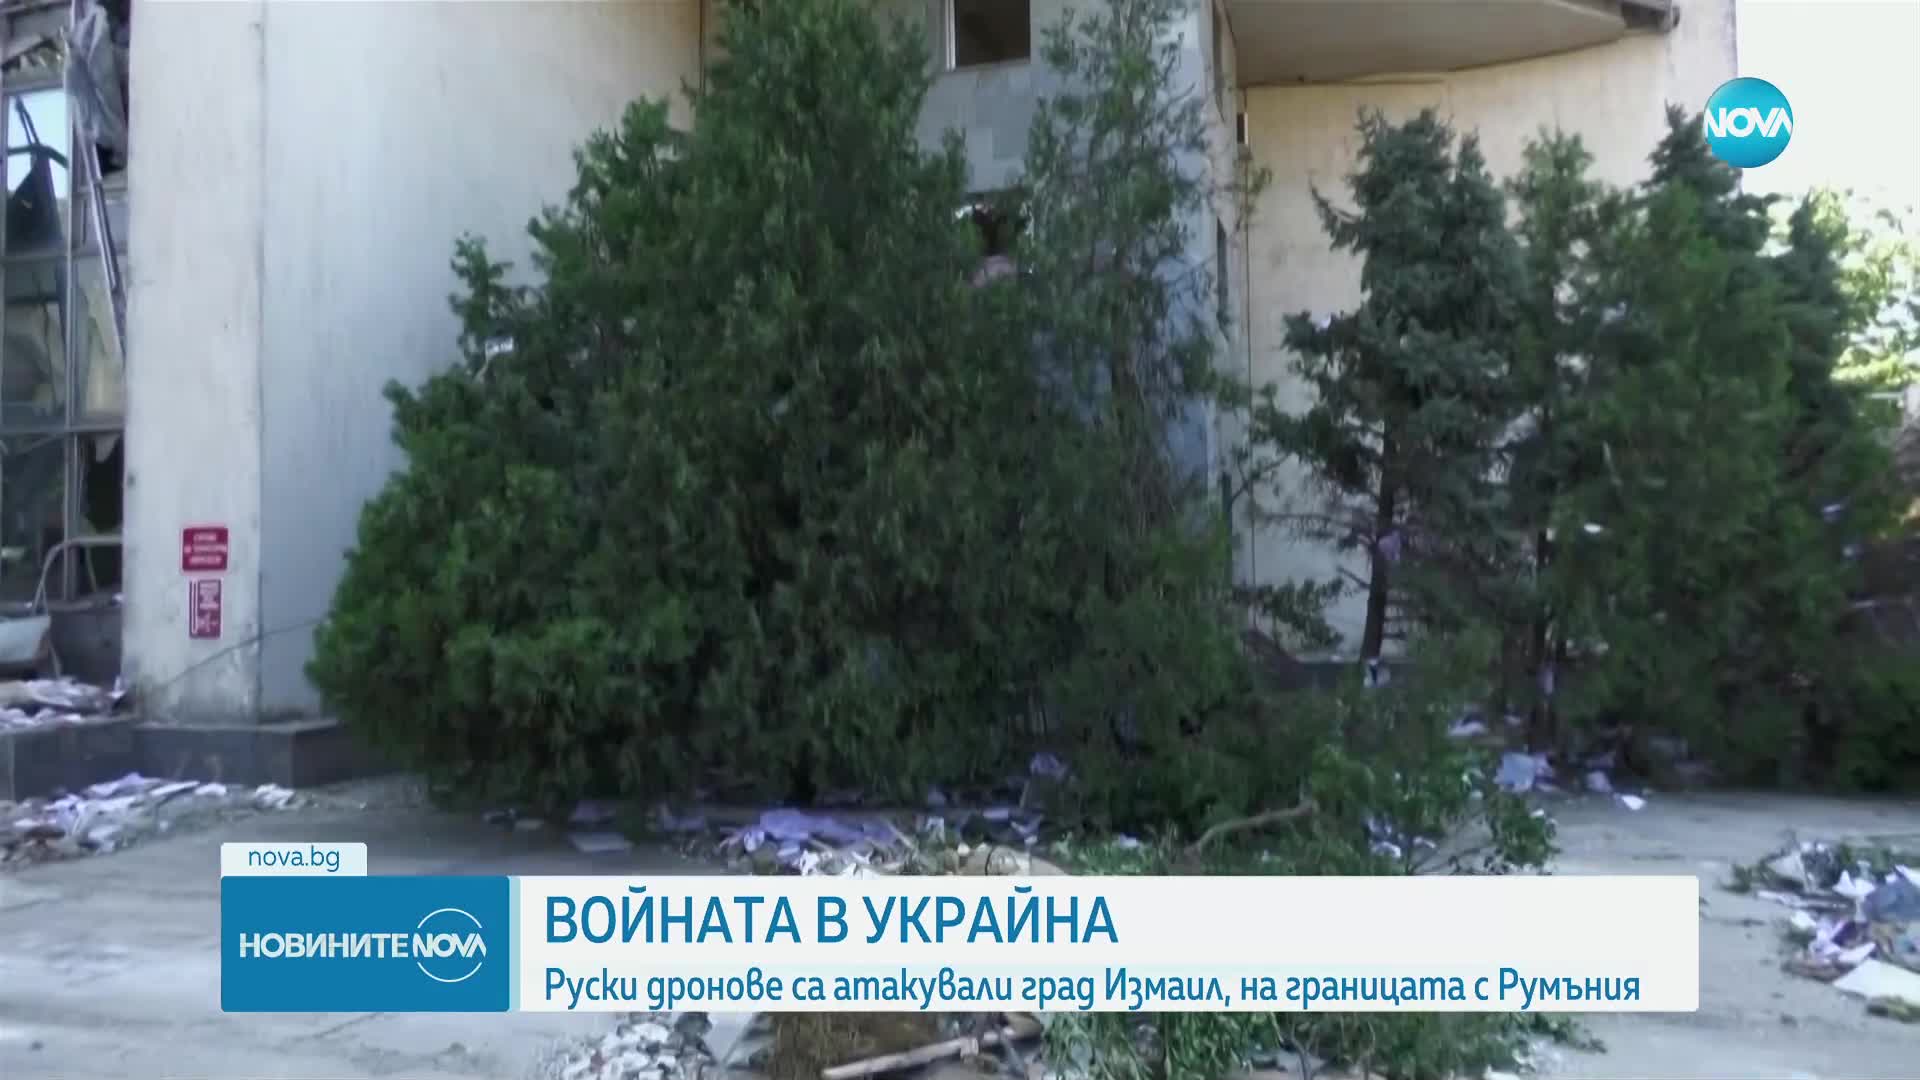 Руски дронове са атакували укранския град Измаил